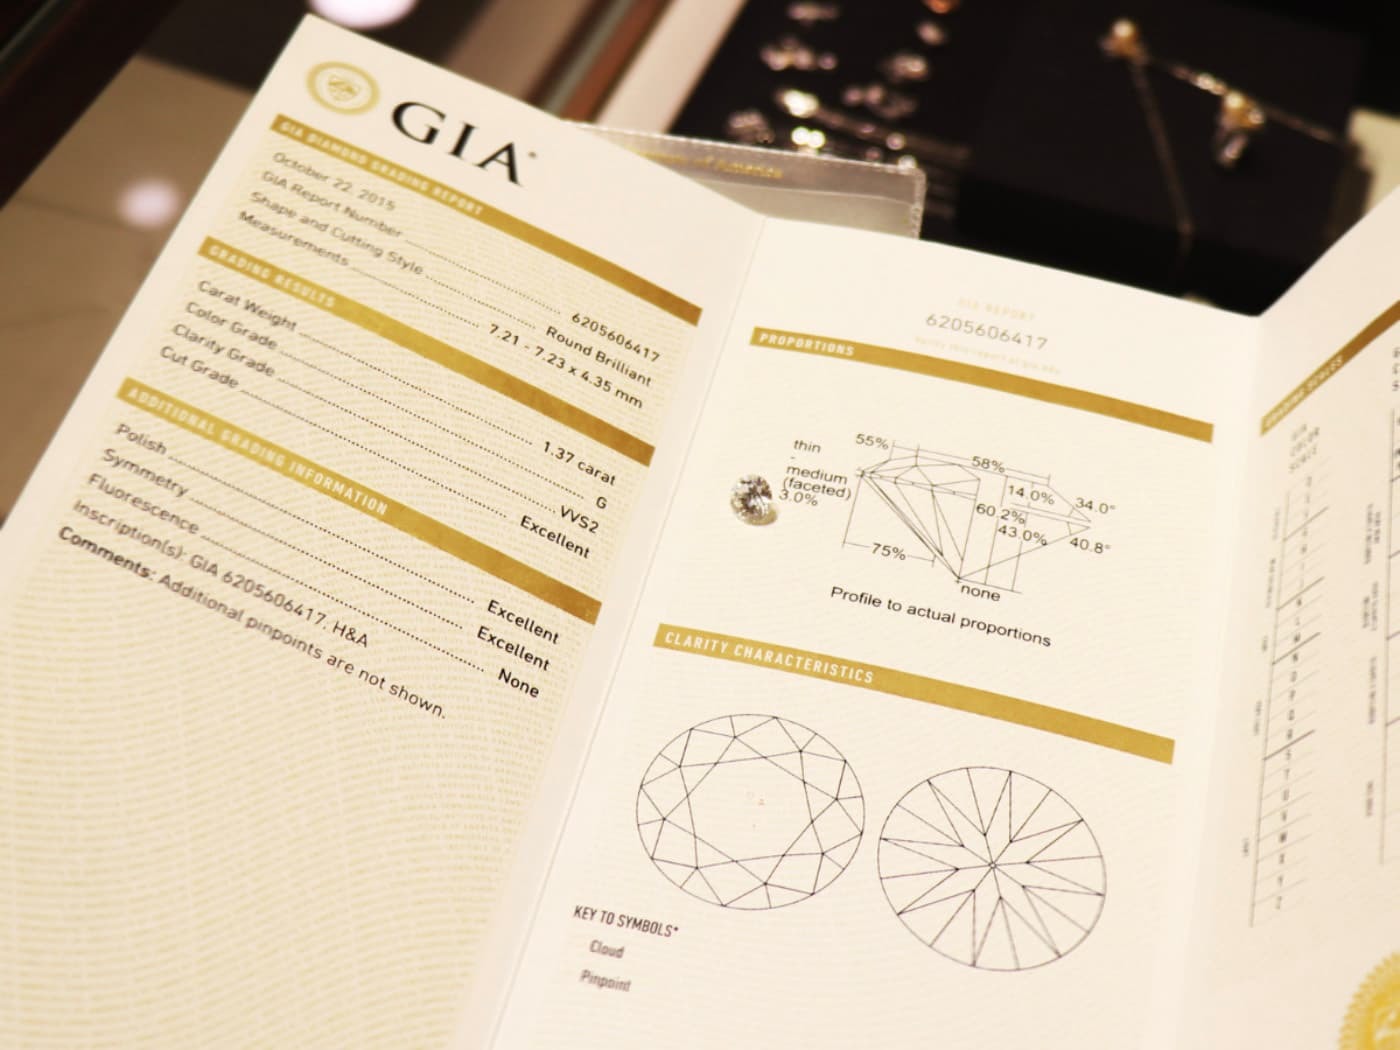 GIA鑽石證書針對4C等級載明評等，連切割廠與貿易商的資訊都一覽無遺，是買到天然鑽石的保證書。